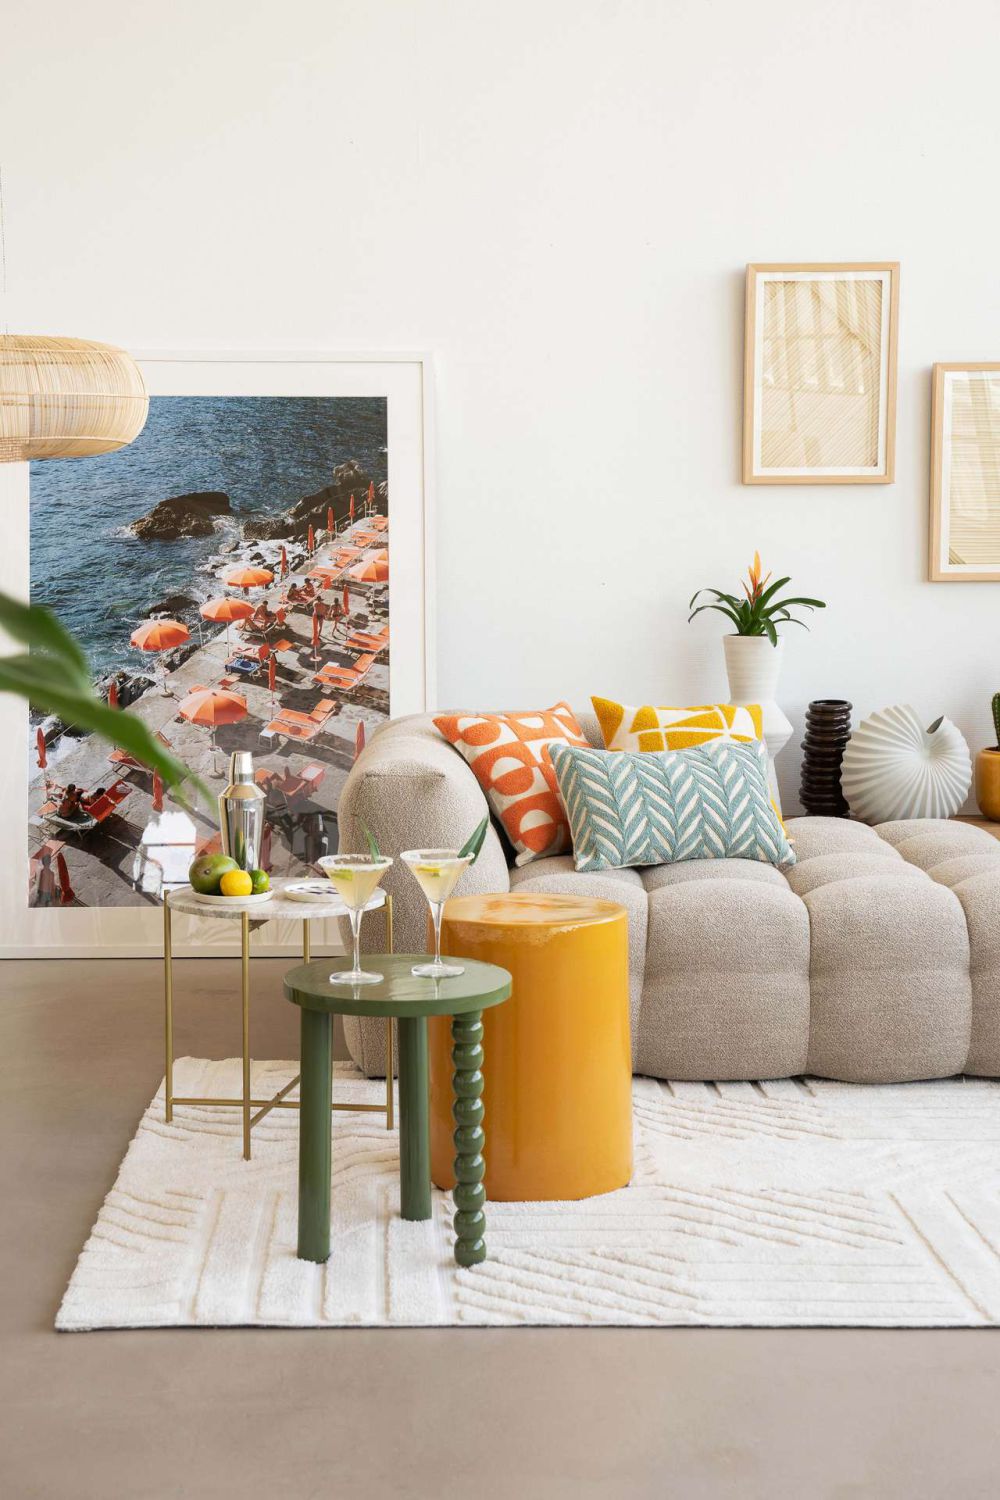 10 Ide Dekorasi Ruang Tamu dengan Sofa Lantai, Cozy and Aesthetic